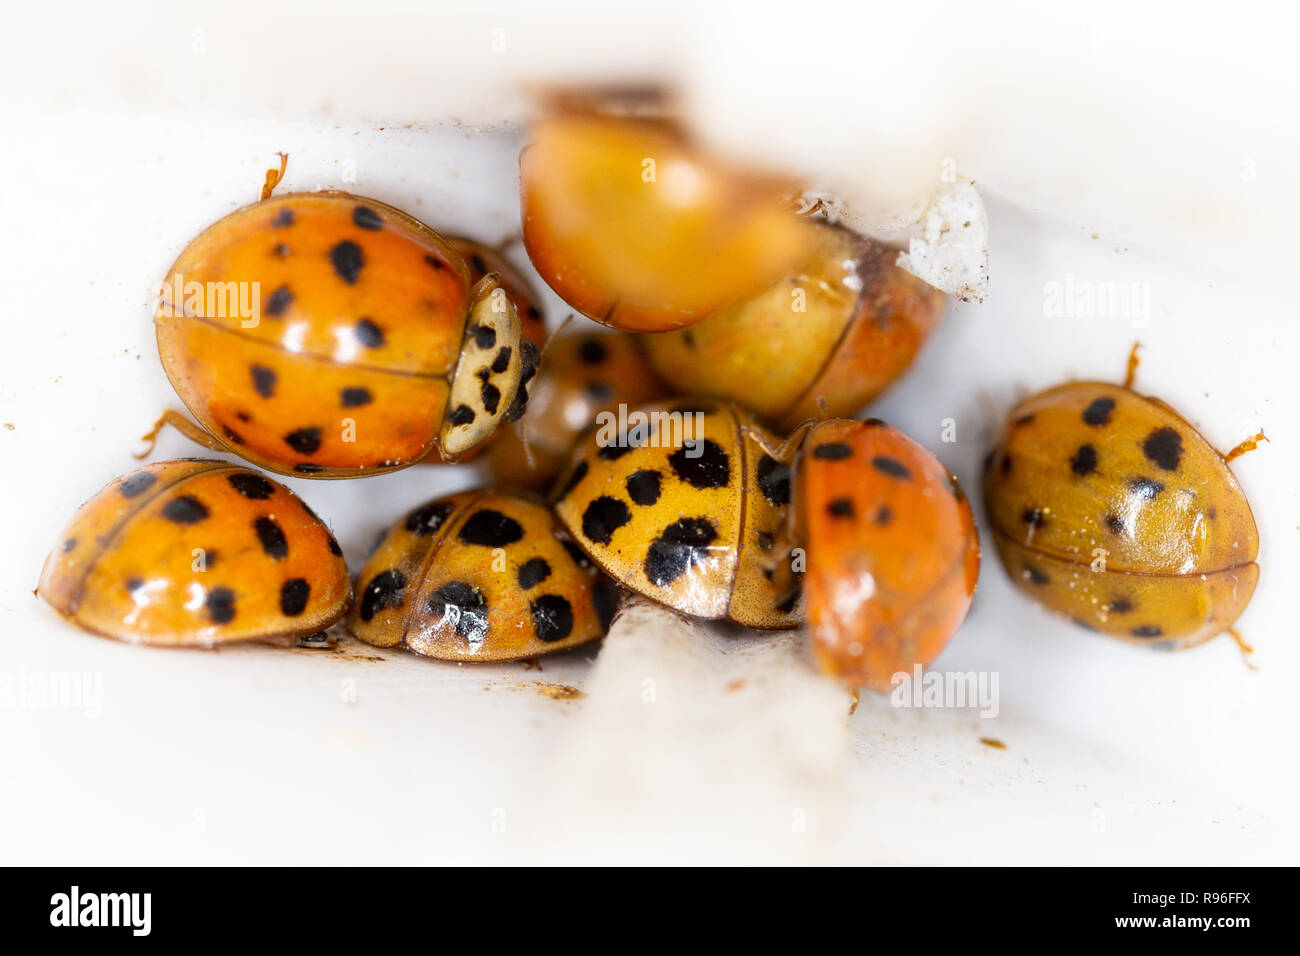 Asia - Harmonia axyridis ladybeetles - buscando refugio en las lagunas de una ventana antes de invierno Foto de stock